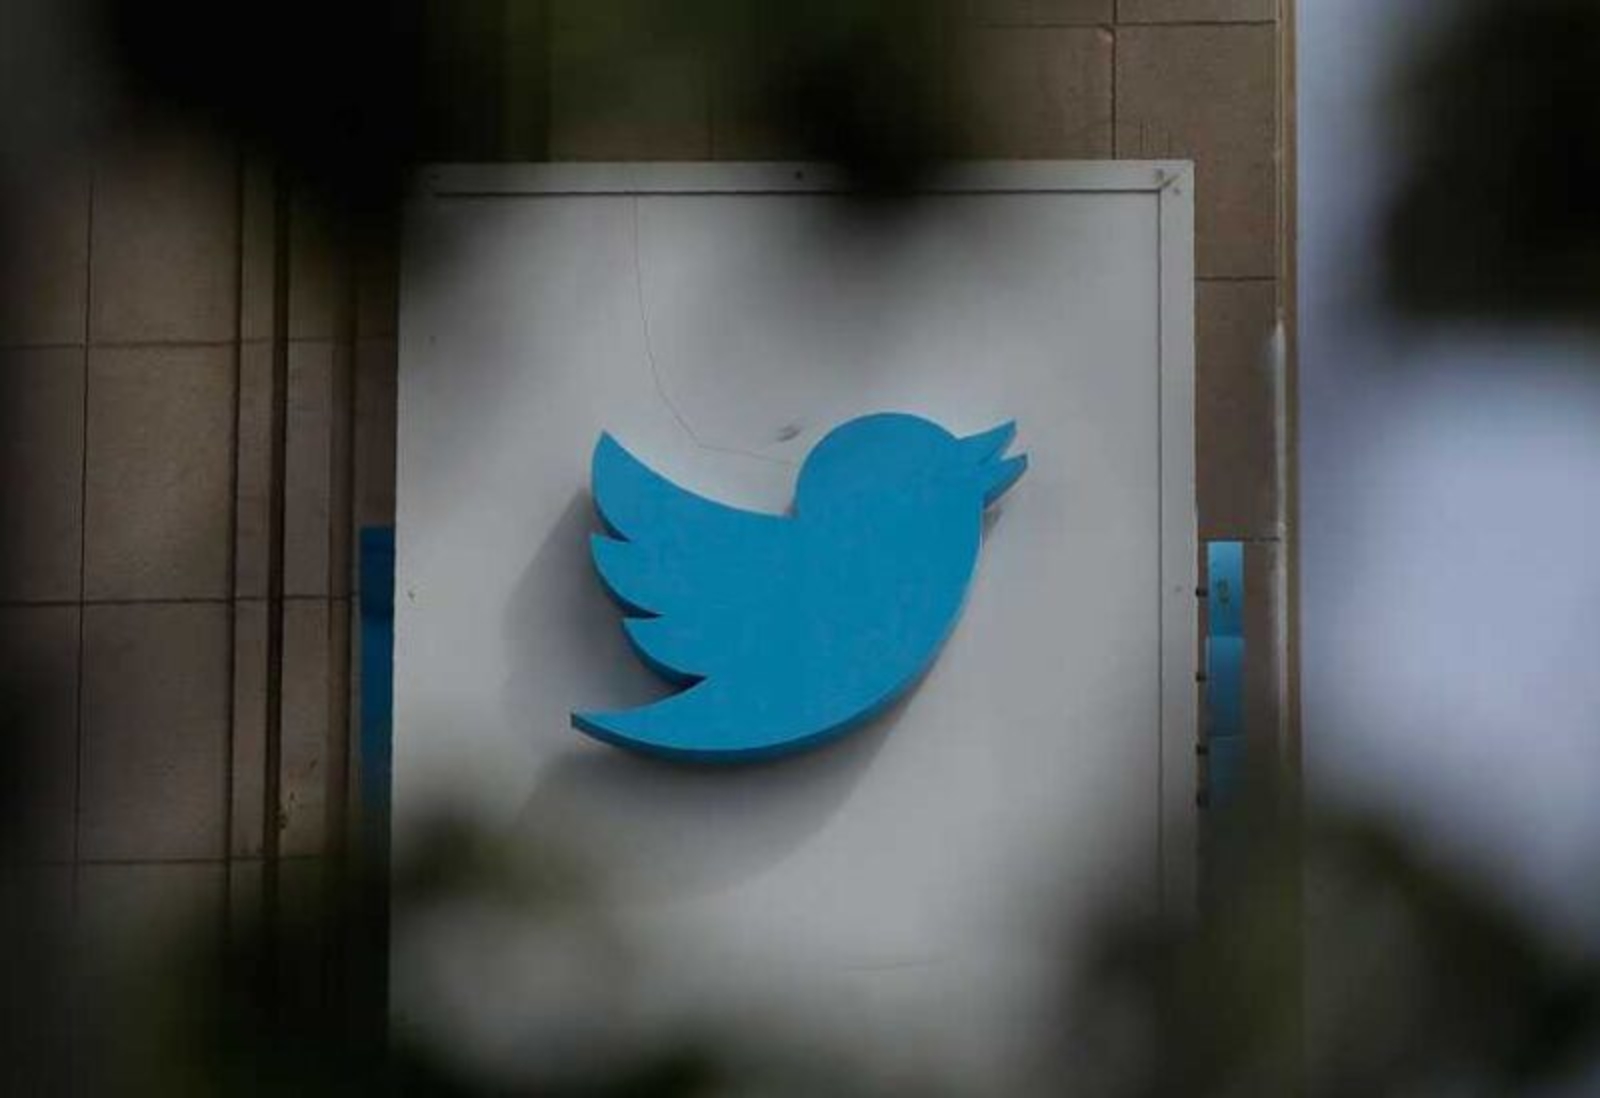 شركة تويتر أطلقت ميزة جديدة تُظهر معدل التغريد الشهري للمستخدمين